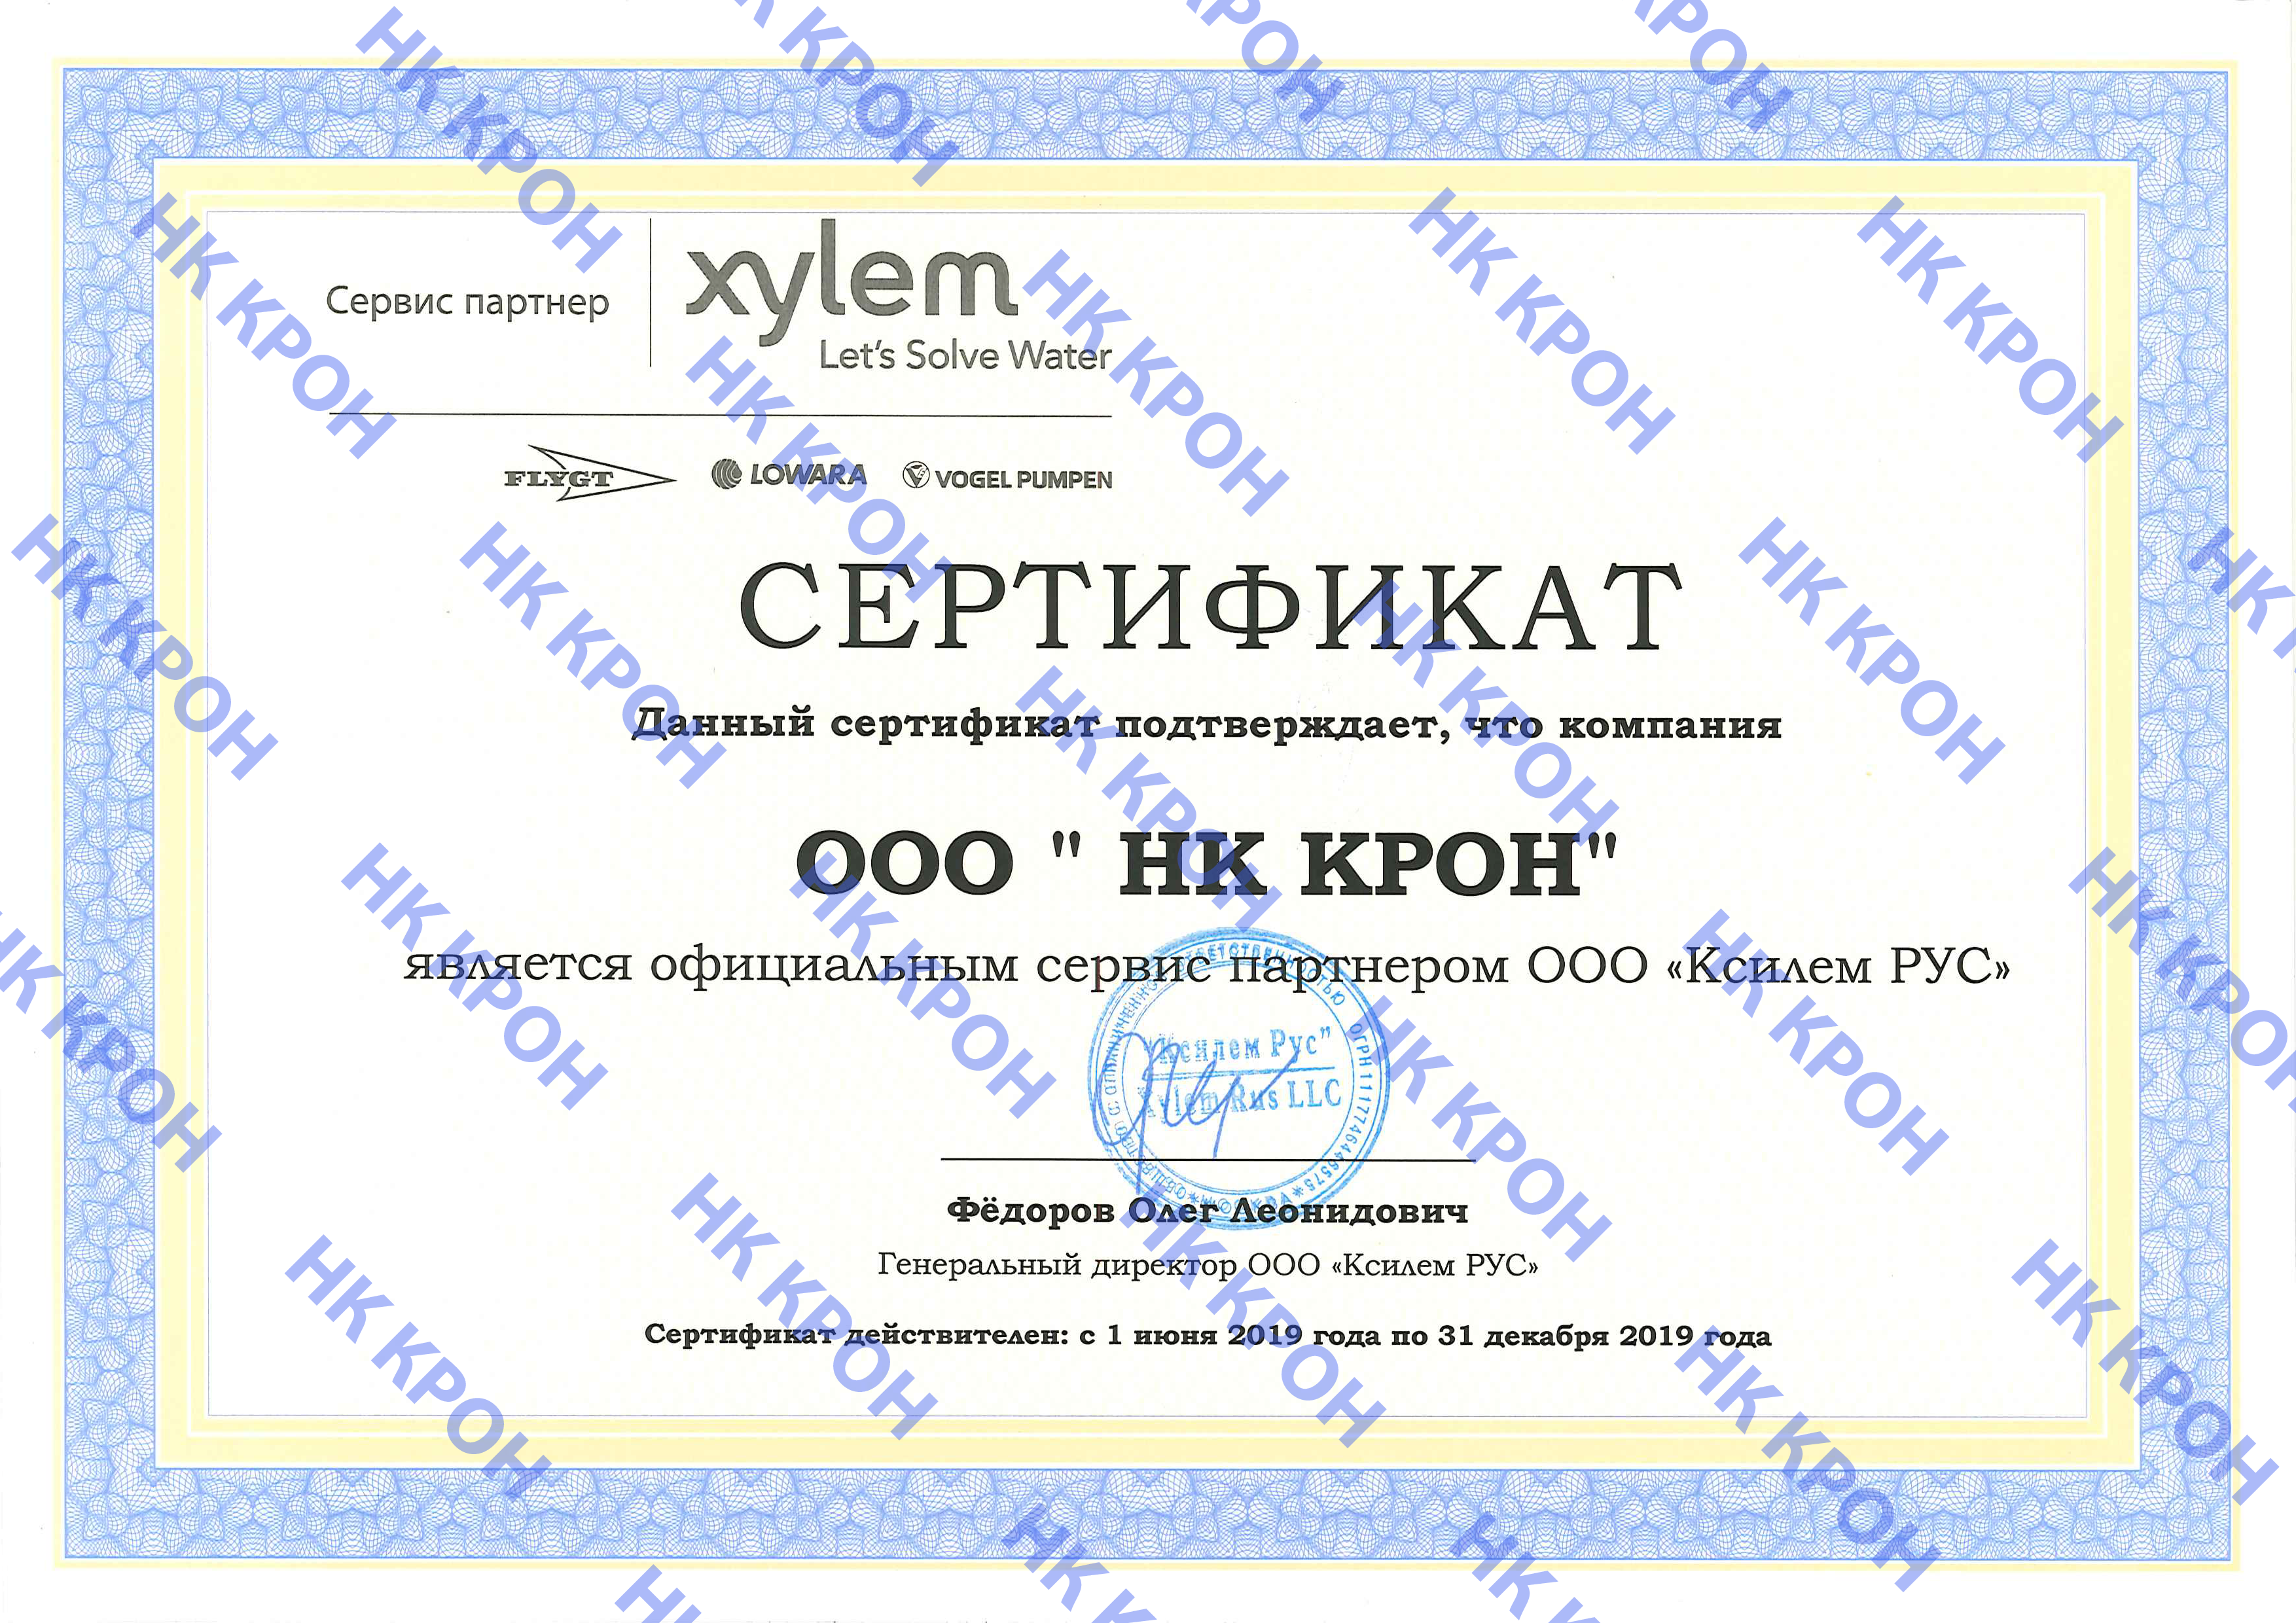 Сертификат сервисного партнера НК КРОН от Ксилем РУС